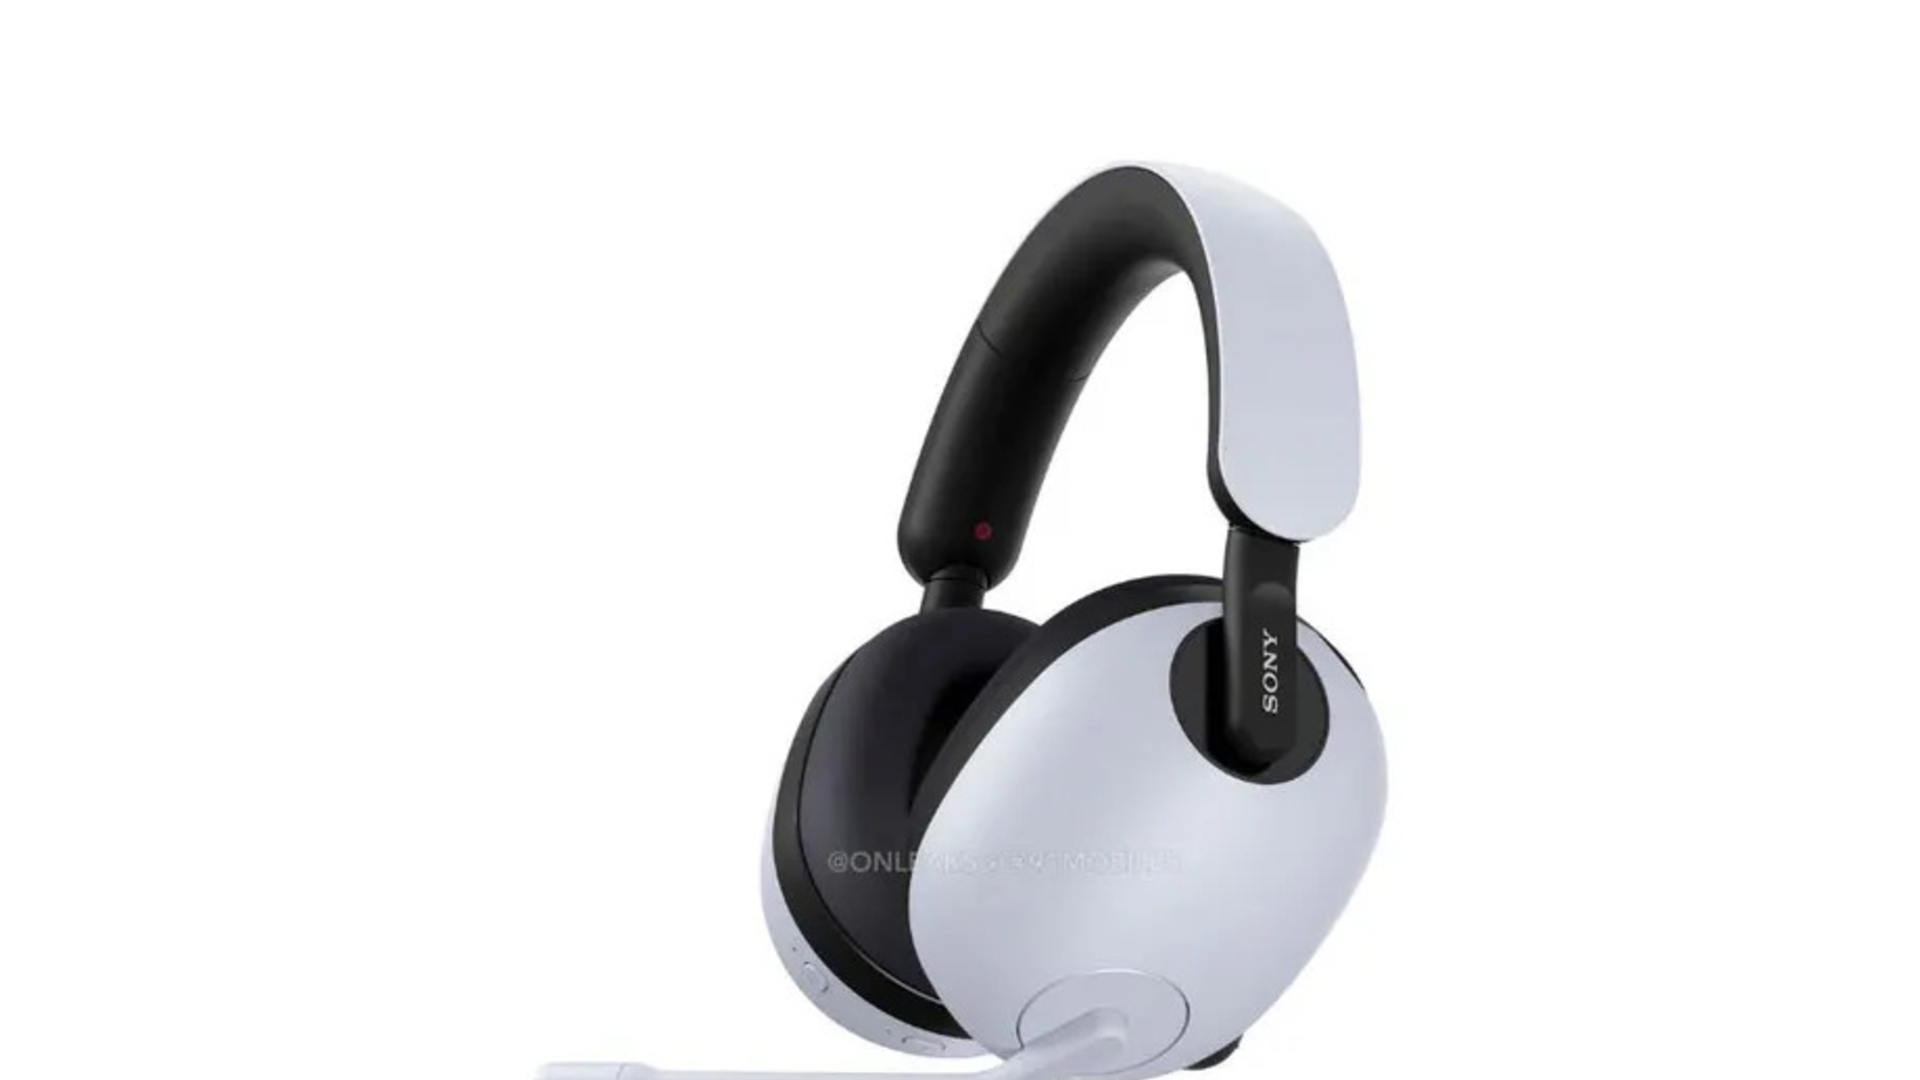 Sony Inzone H7 produkt shot. Wite draadloze headset op wite eftergrûn